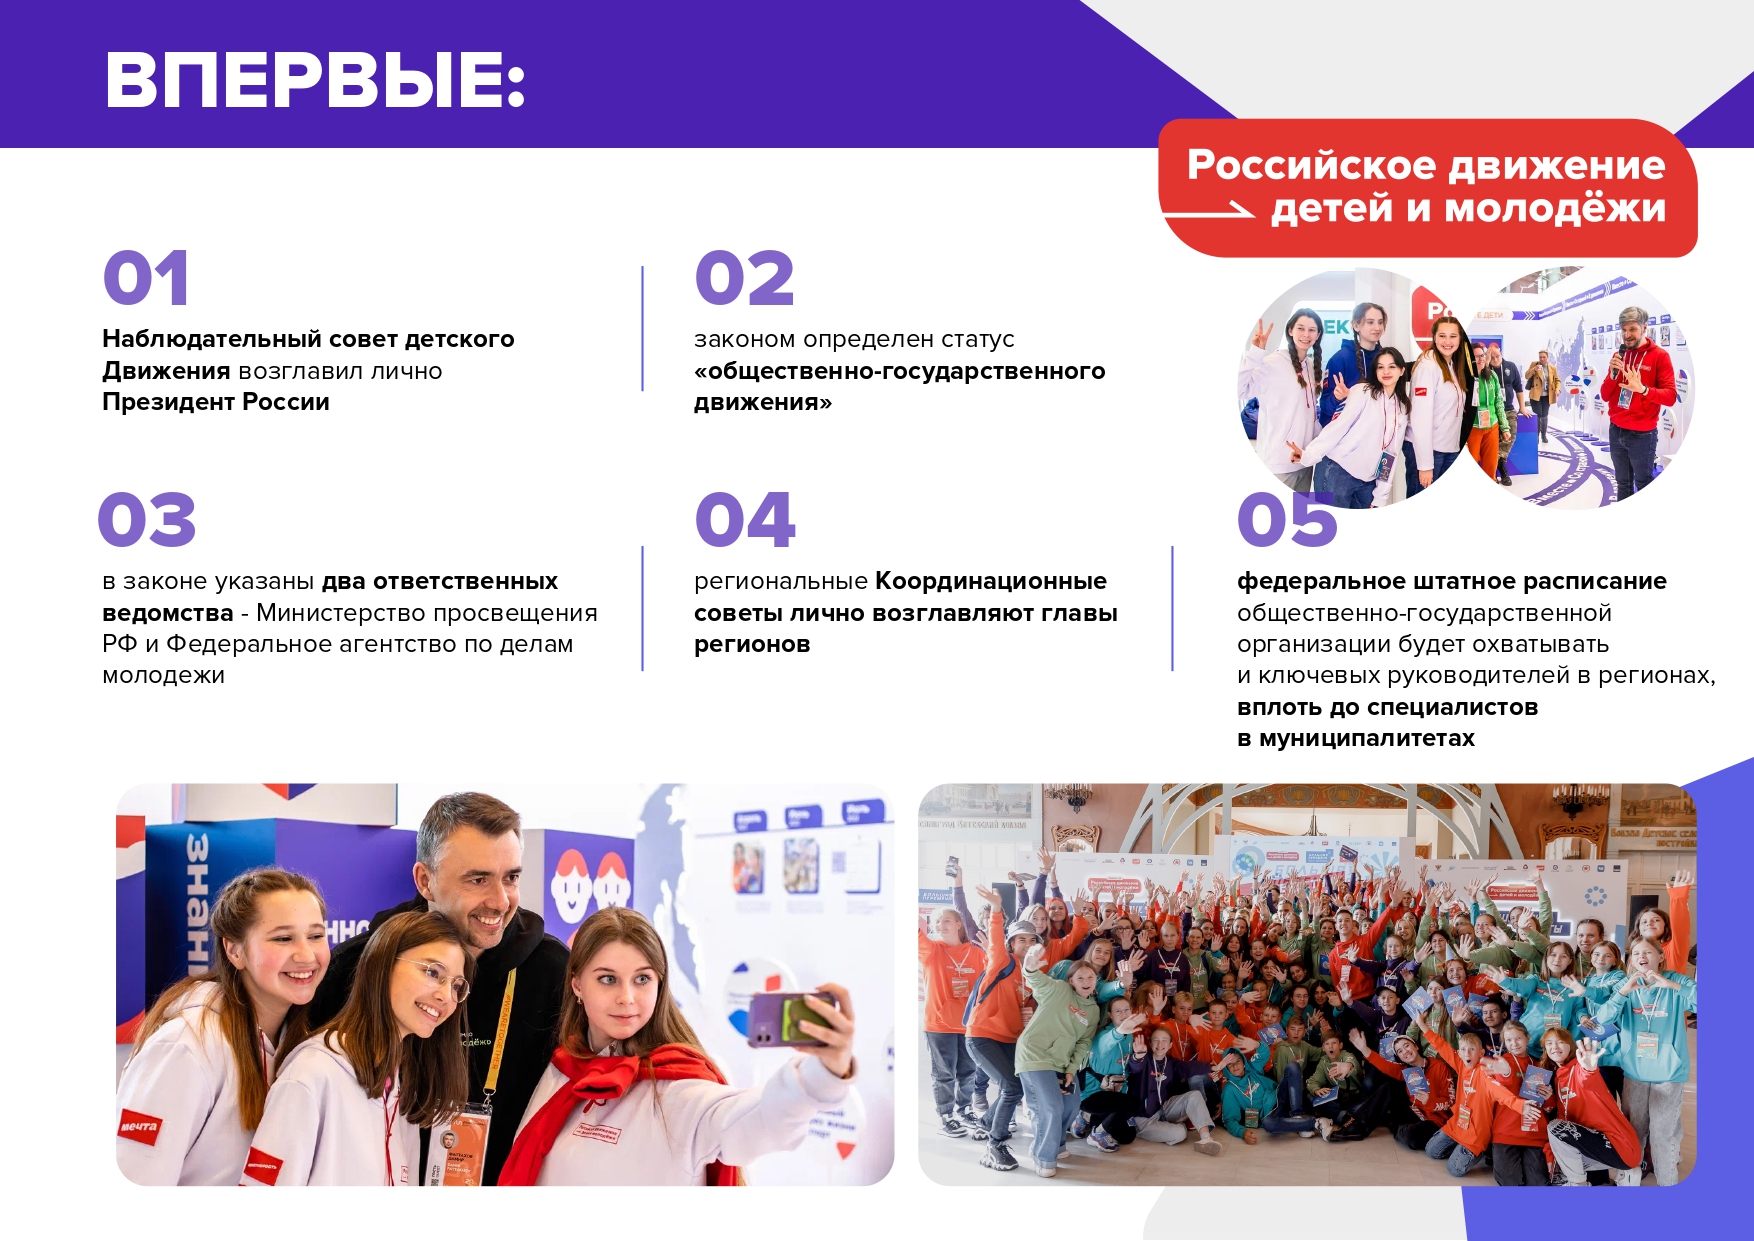 Движение первых с чего начать. Российское движение молодежи. Движение детей и молодежи. Российское движение детей и молодёжи движение. Российское движение молодежи движение первых.